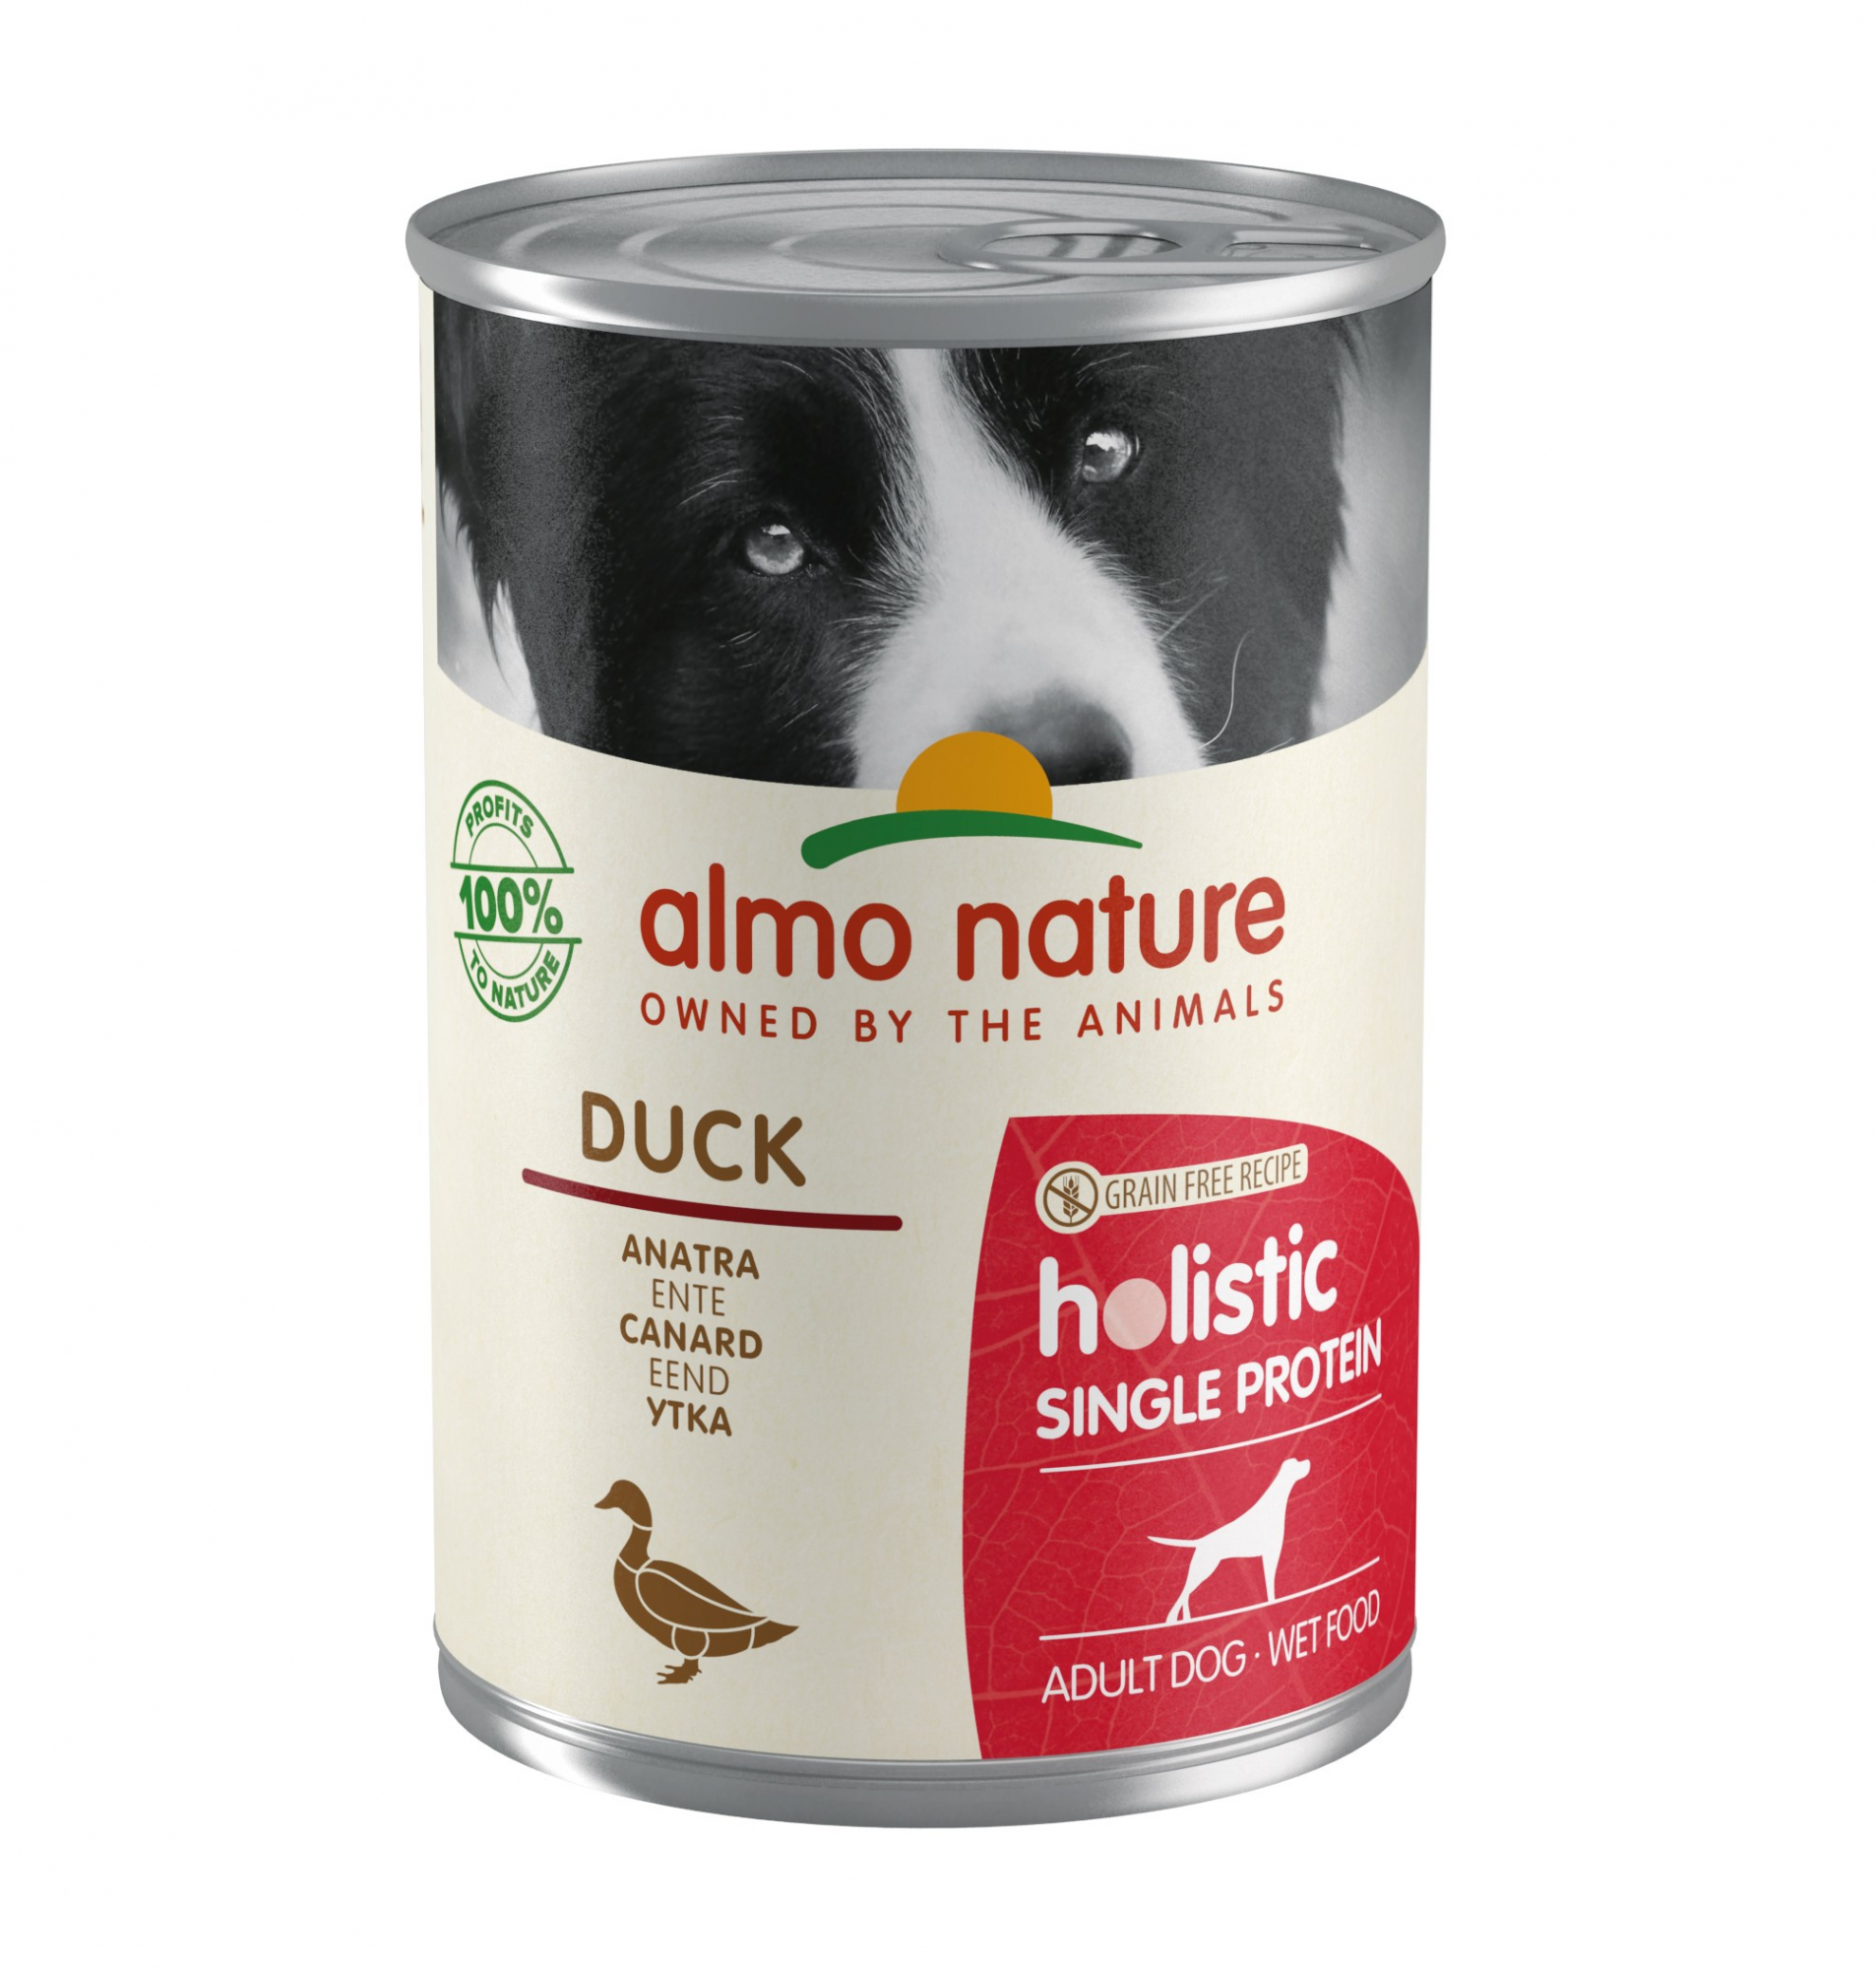 Almo Nature Holistic Single Protein comida húmeda para perros - 5 recetas